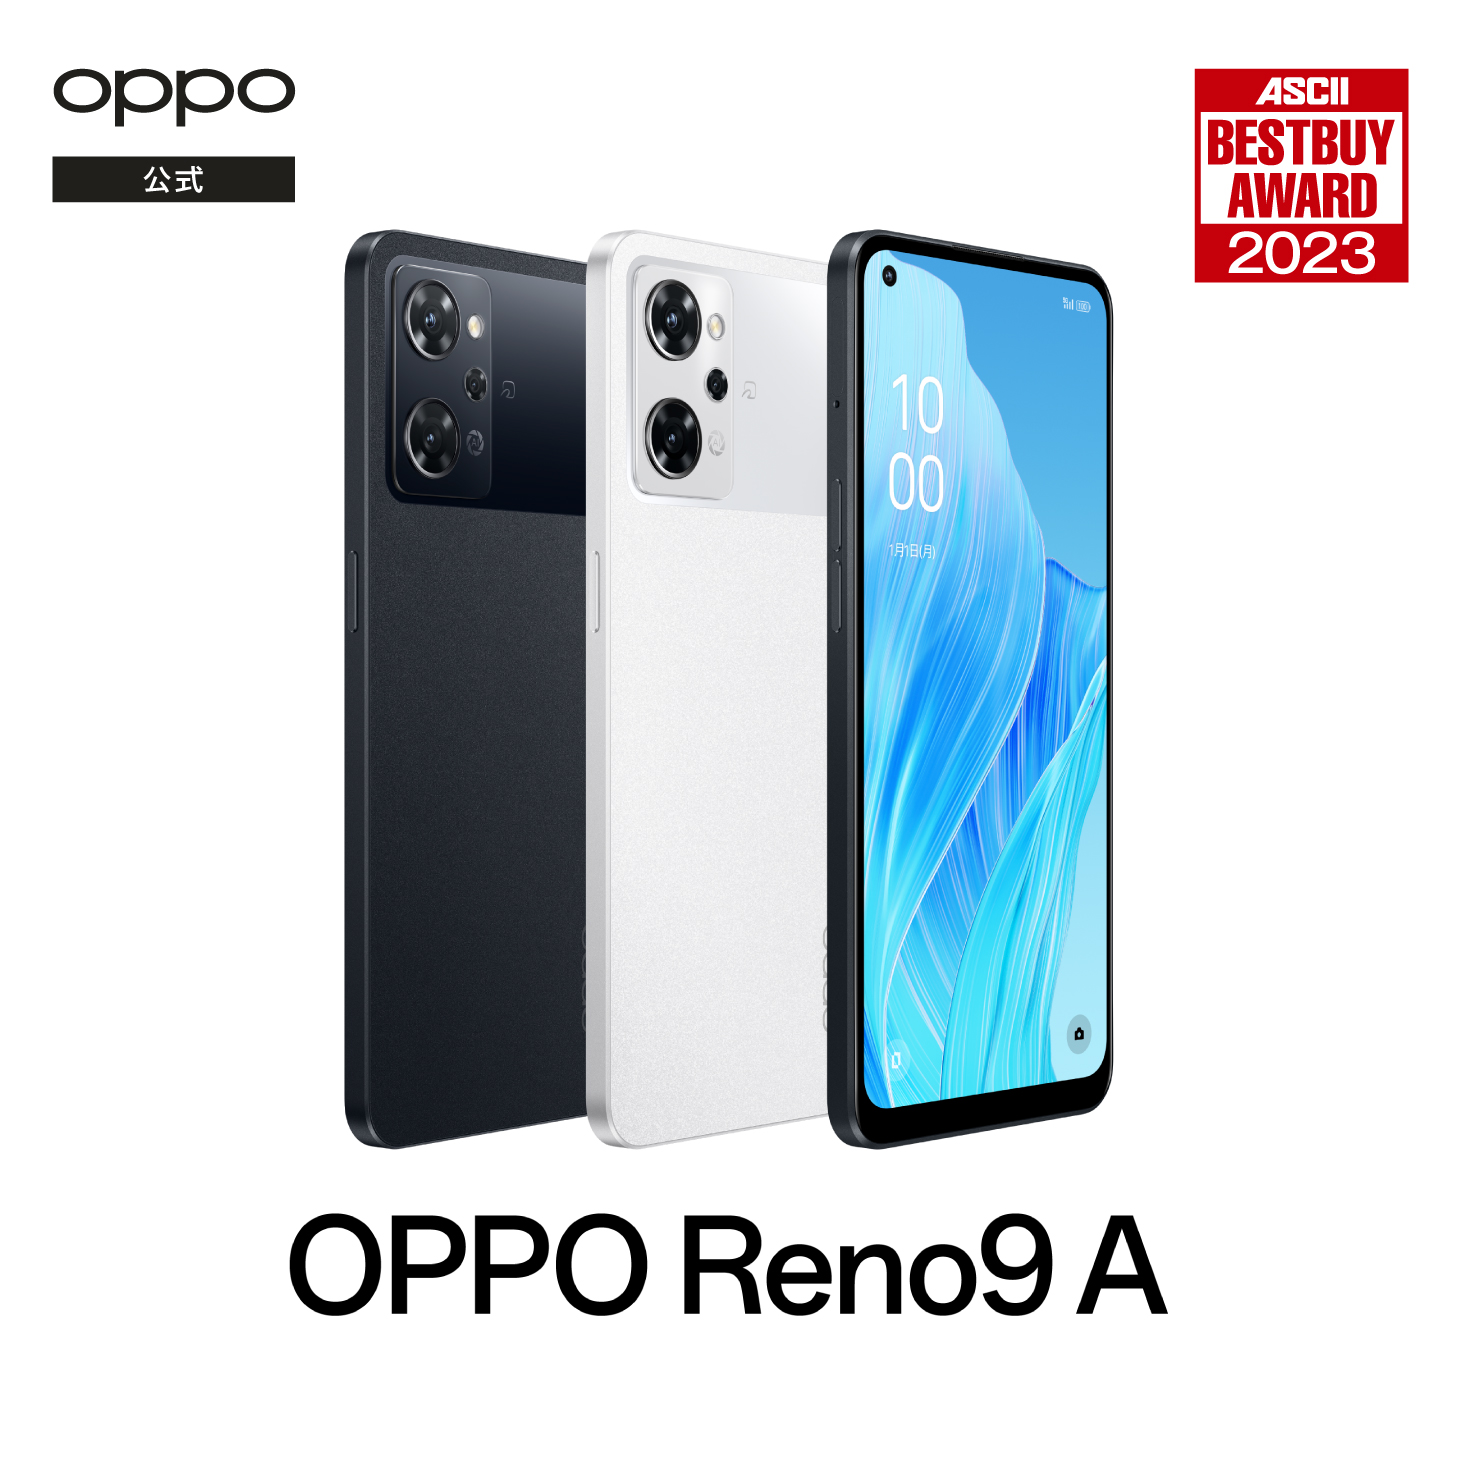 OPPO Reno9 A SIMフリー 5G スマホ Android 本体 新品 アンドロイド スマートフォン シムフリー 端末 RAM8GB 防水  マイナンバーカード